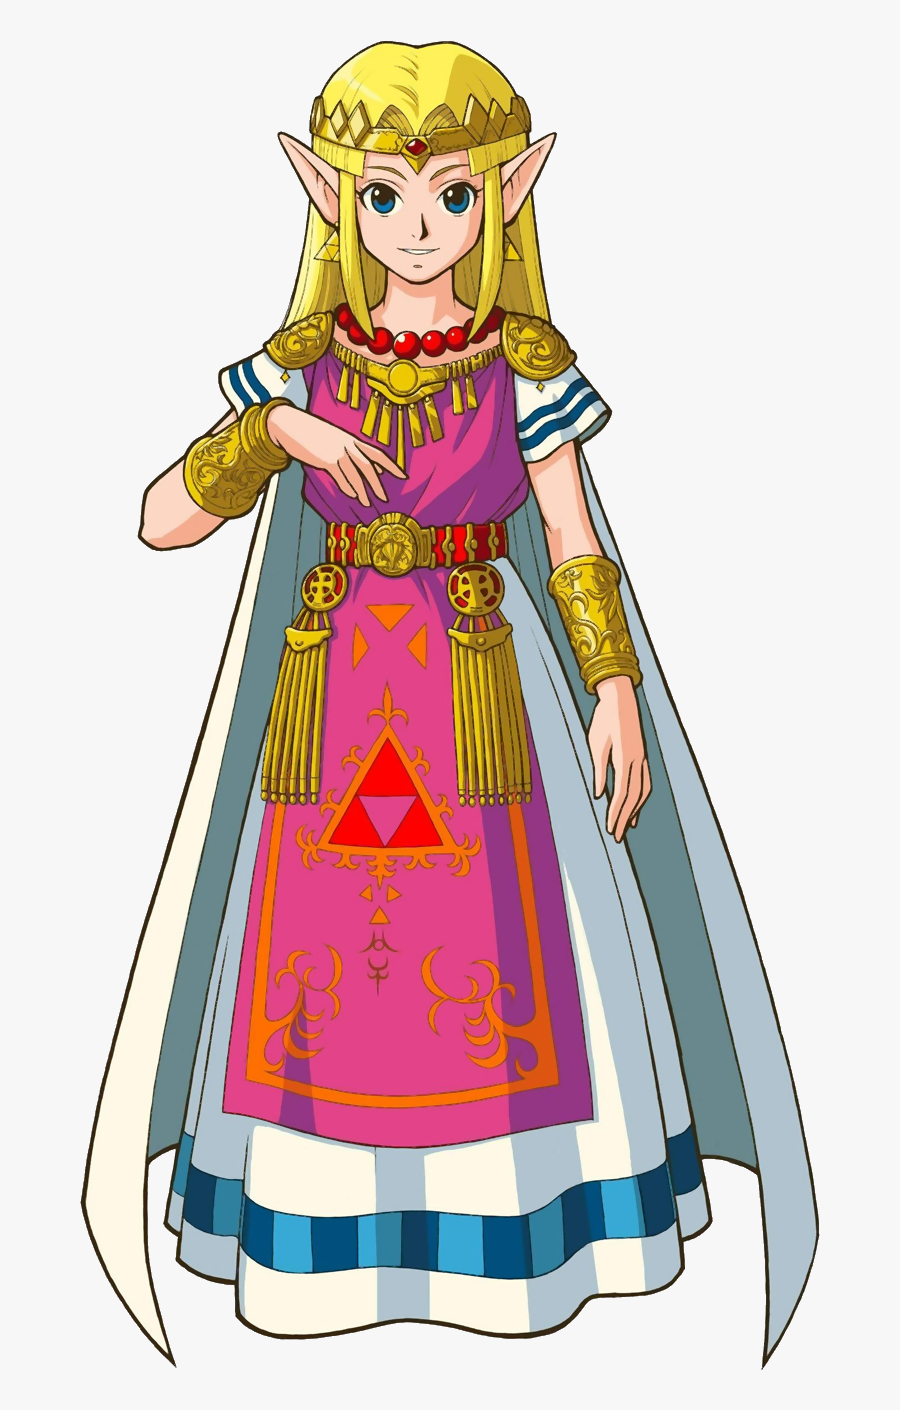 Zelda Link To The Past Zelda, Transparent Clipart